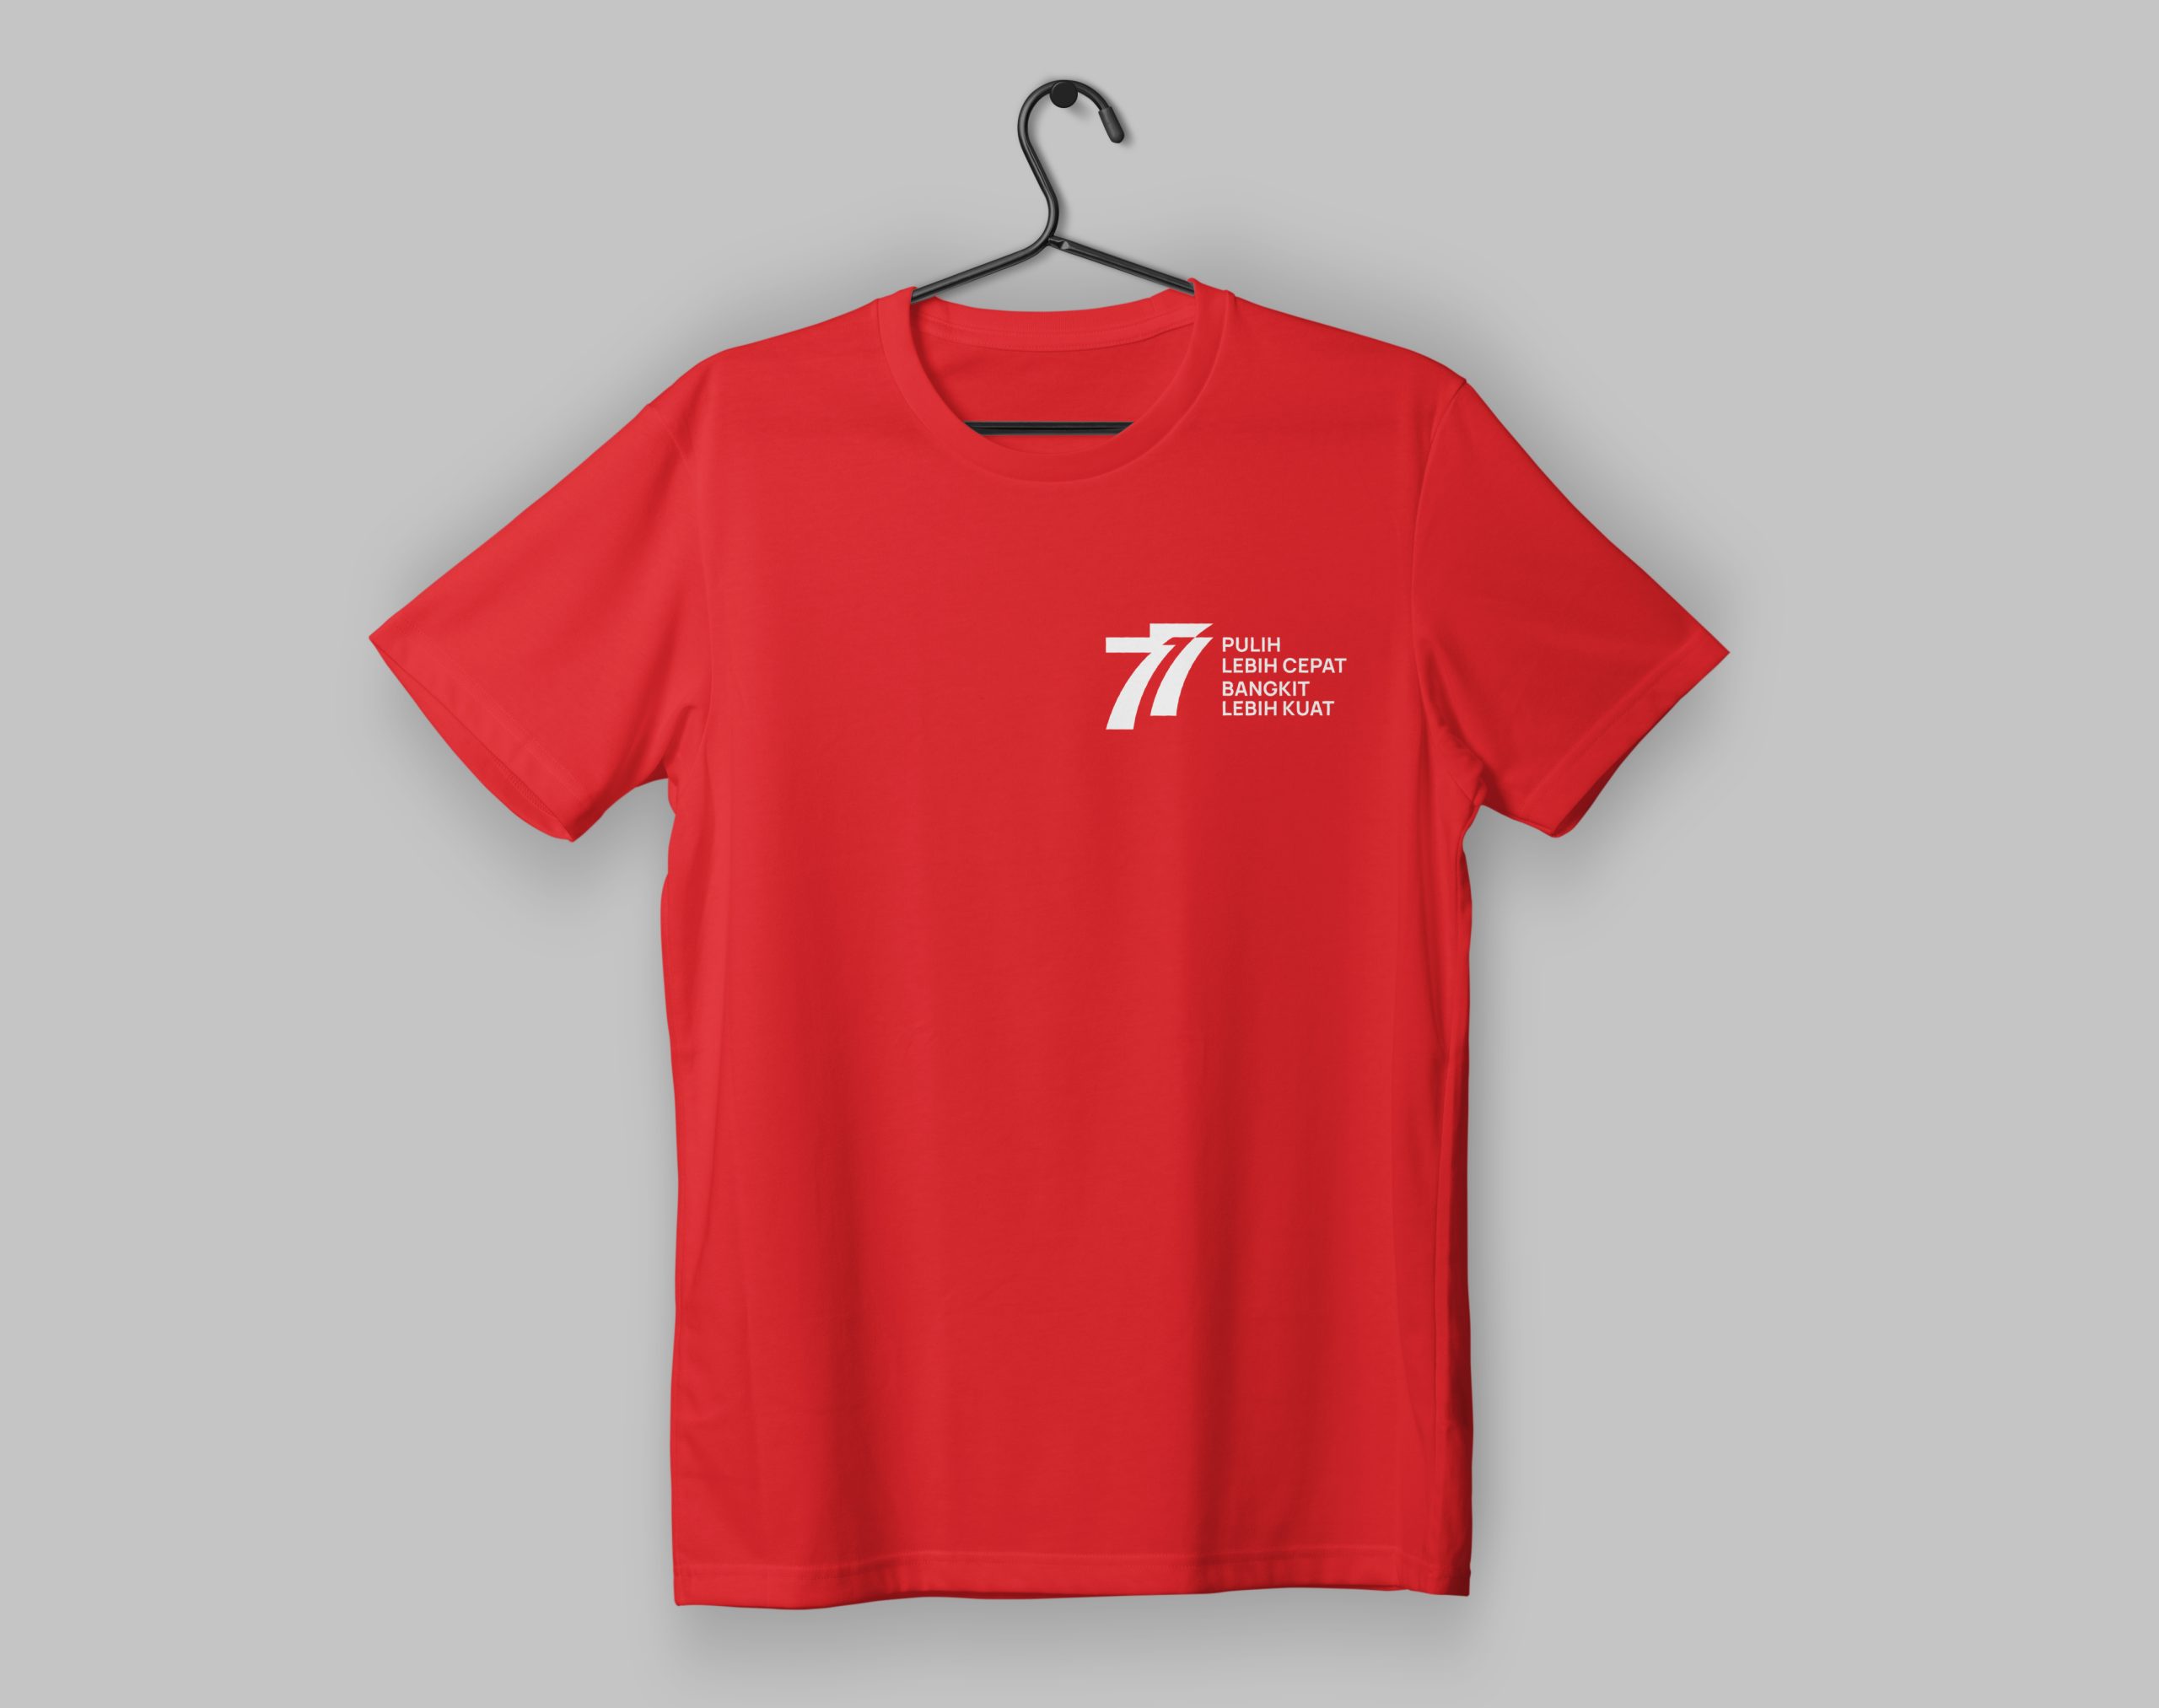 Kaos dengan logo HUT RI 77